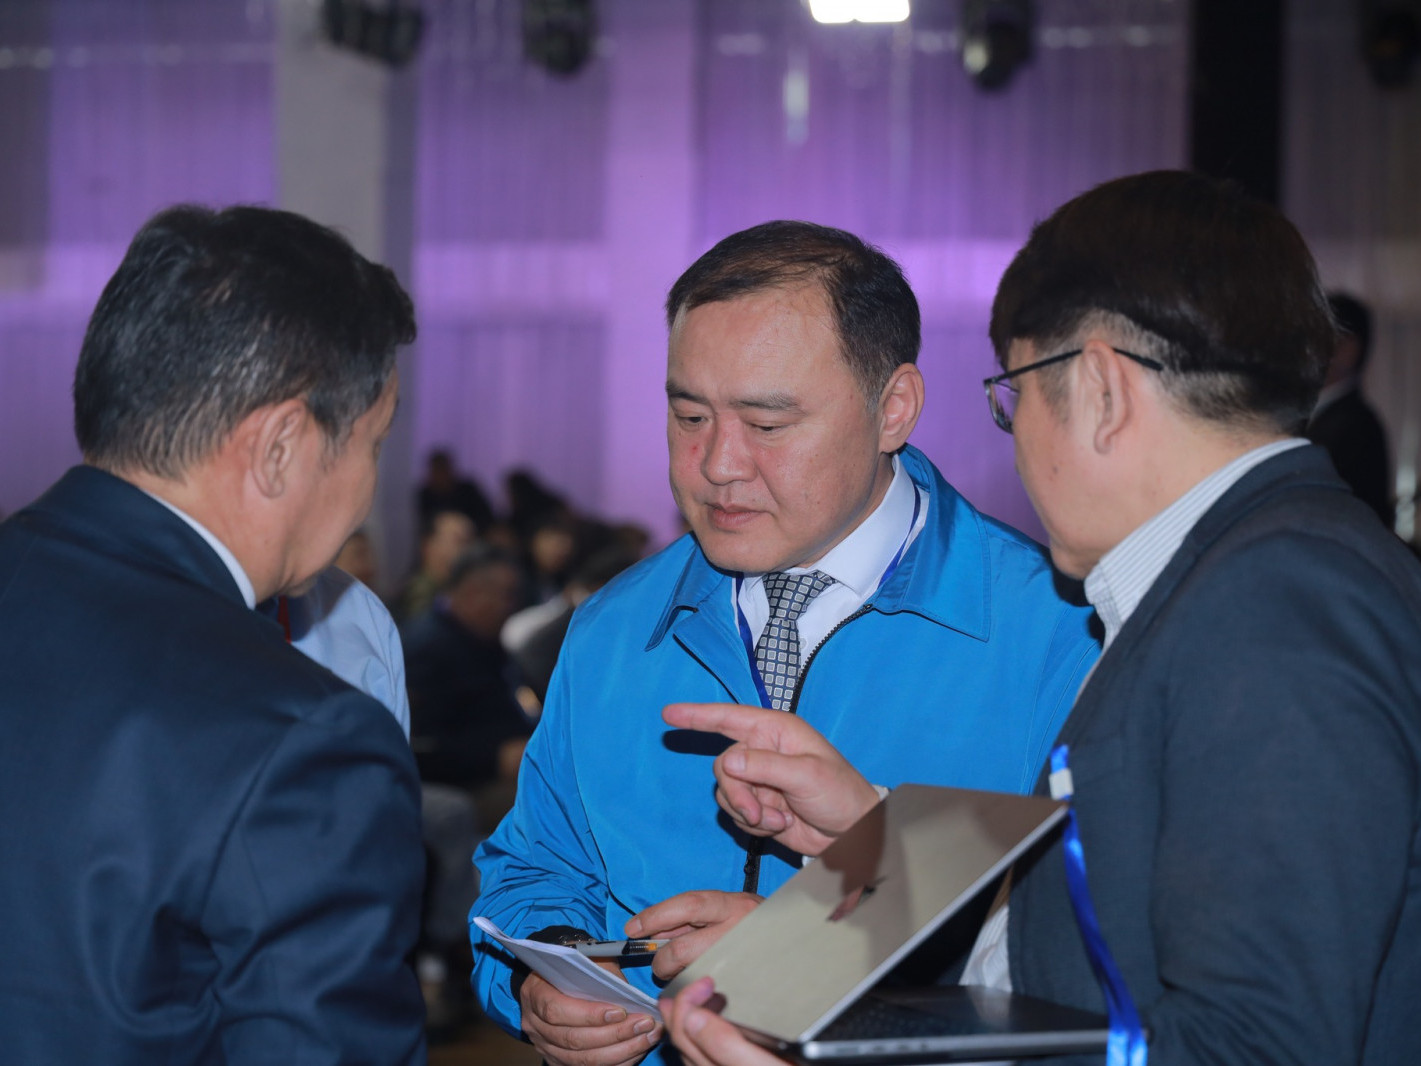 ФОТО: АН-ын “Бүтэн Монгол, Бүрэн Ардчилал” 9+90+900-Эрчимт хөгжлийн төлөвлөгөөг ҮБХ-ы хурлаар эцэслэн баталлаа